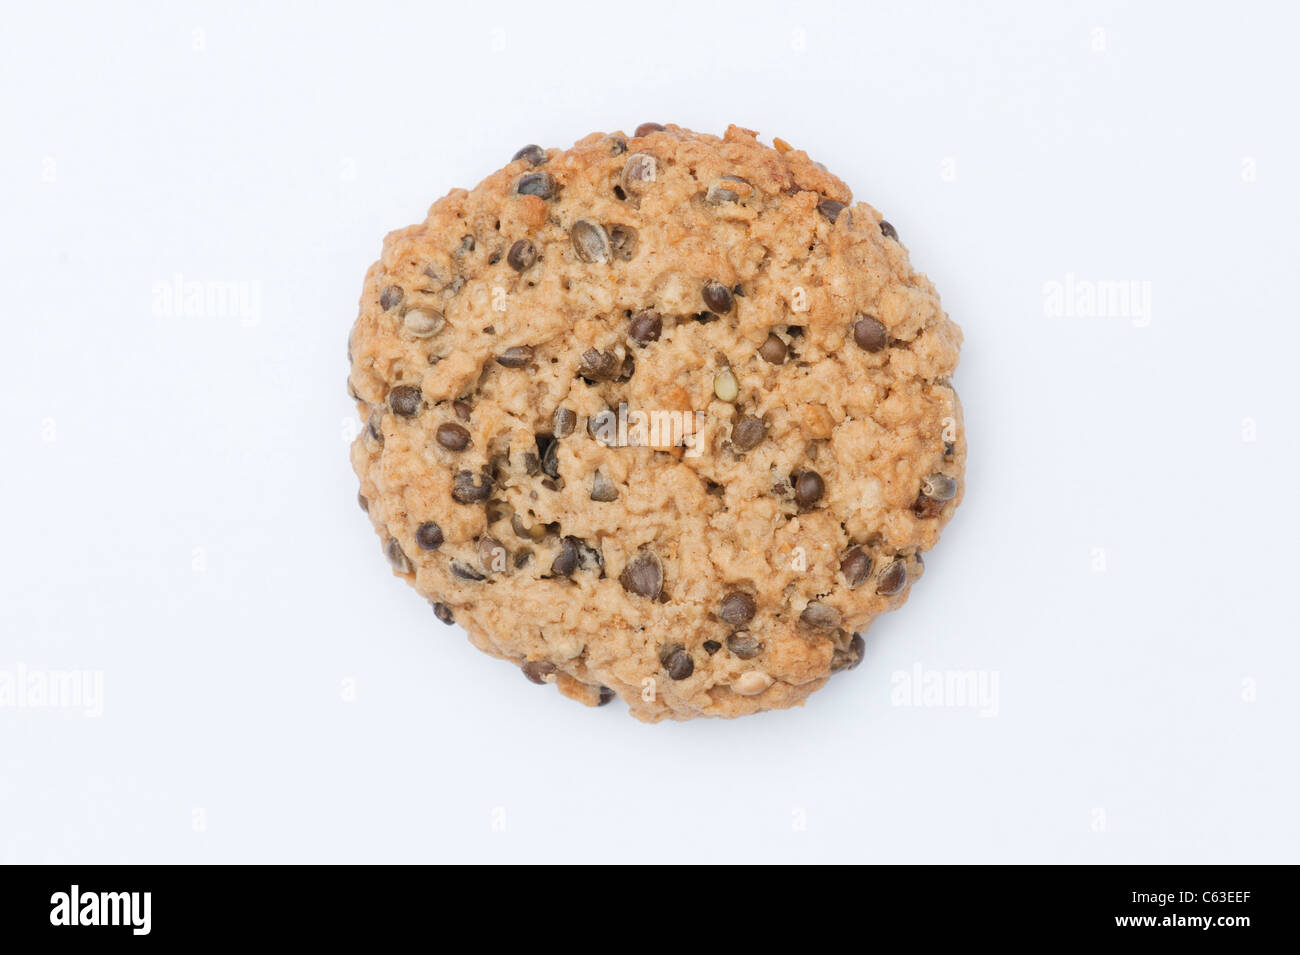 Les graines de chanvre les cookies . Des biscuits faits avec des graines de chanvre sur fond blanc Banque D'Images